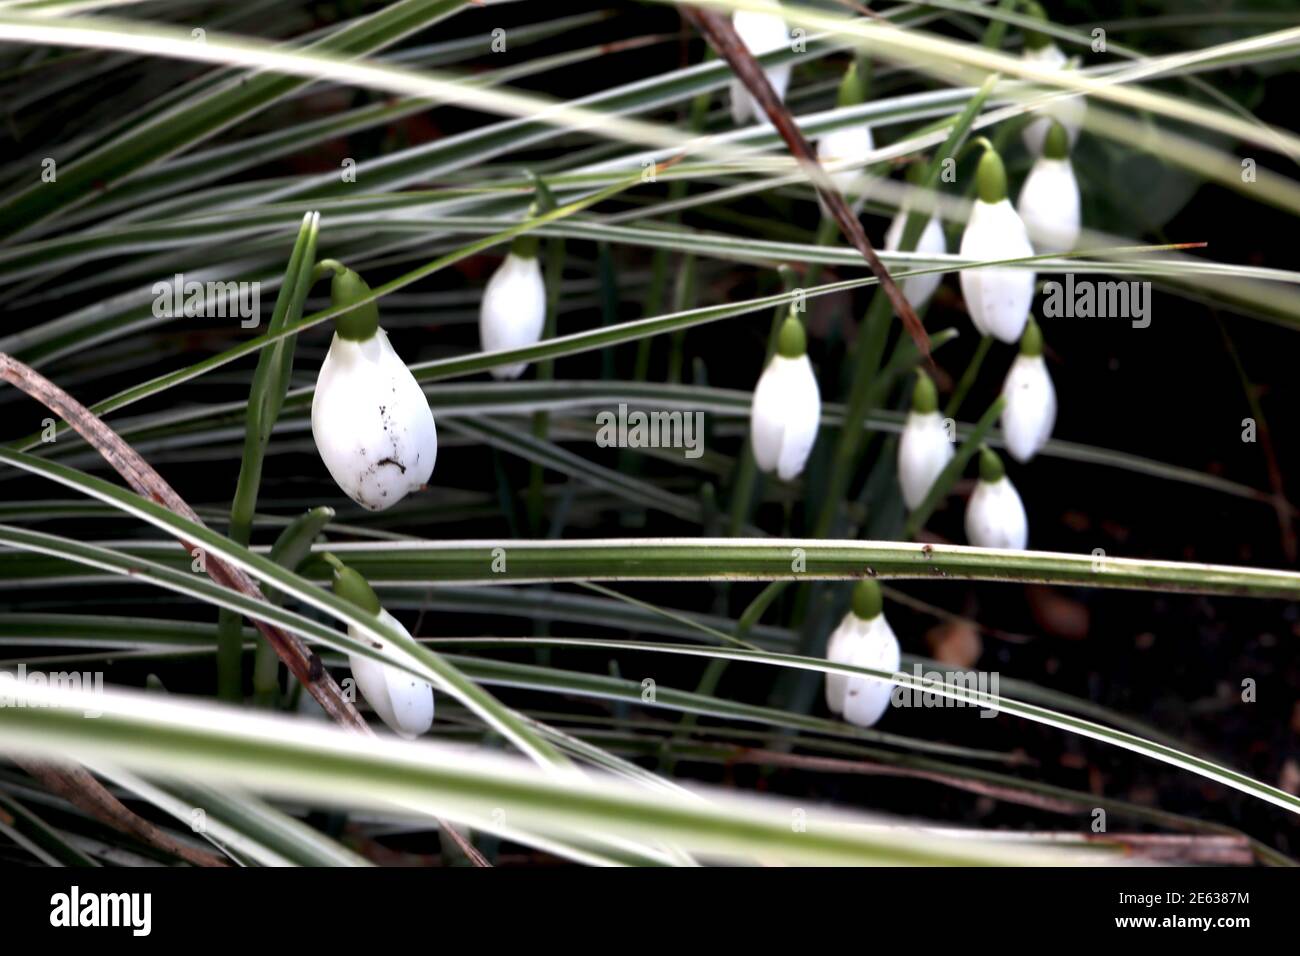 Galanthus nivalis Snowdrops – groupe bourgeonnant de fleurs blanches en forme de cloche parmi les feuilles linéaires, janvier, Angleterre, Royaume-Uni Banque D'Images